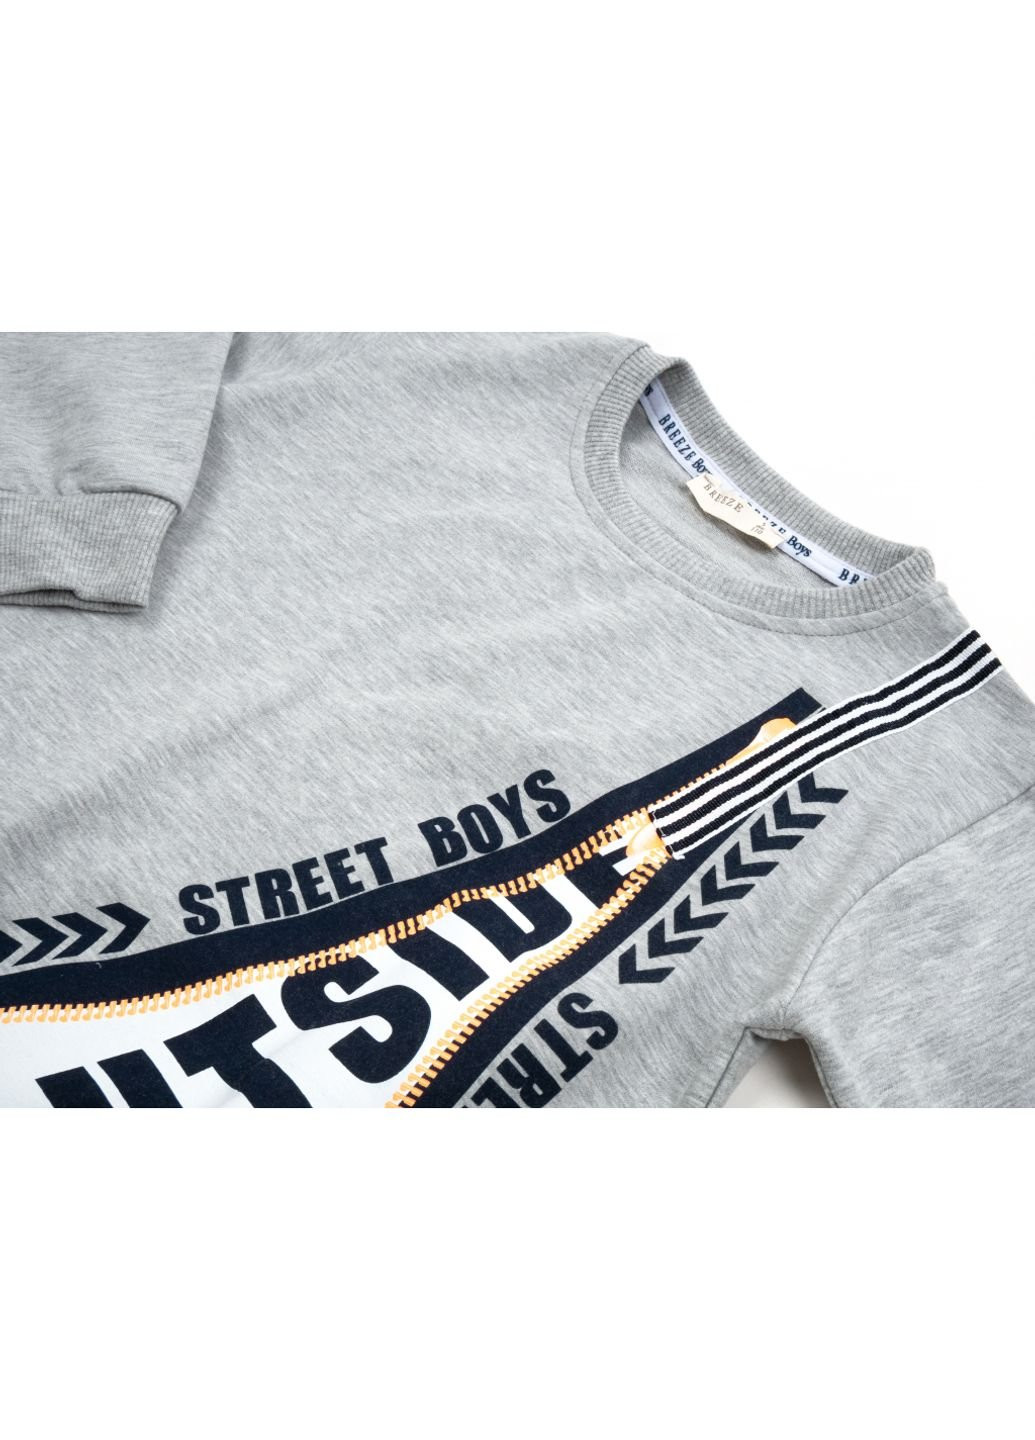 Синий демисезонный спортивный костюм "street boys" (16039-128b-gray) Breeze